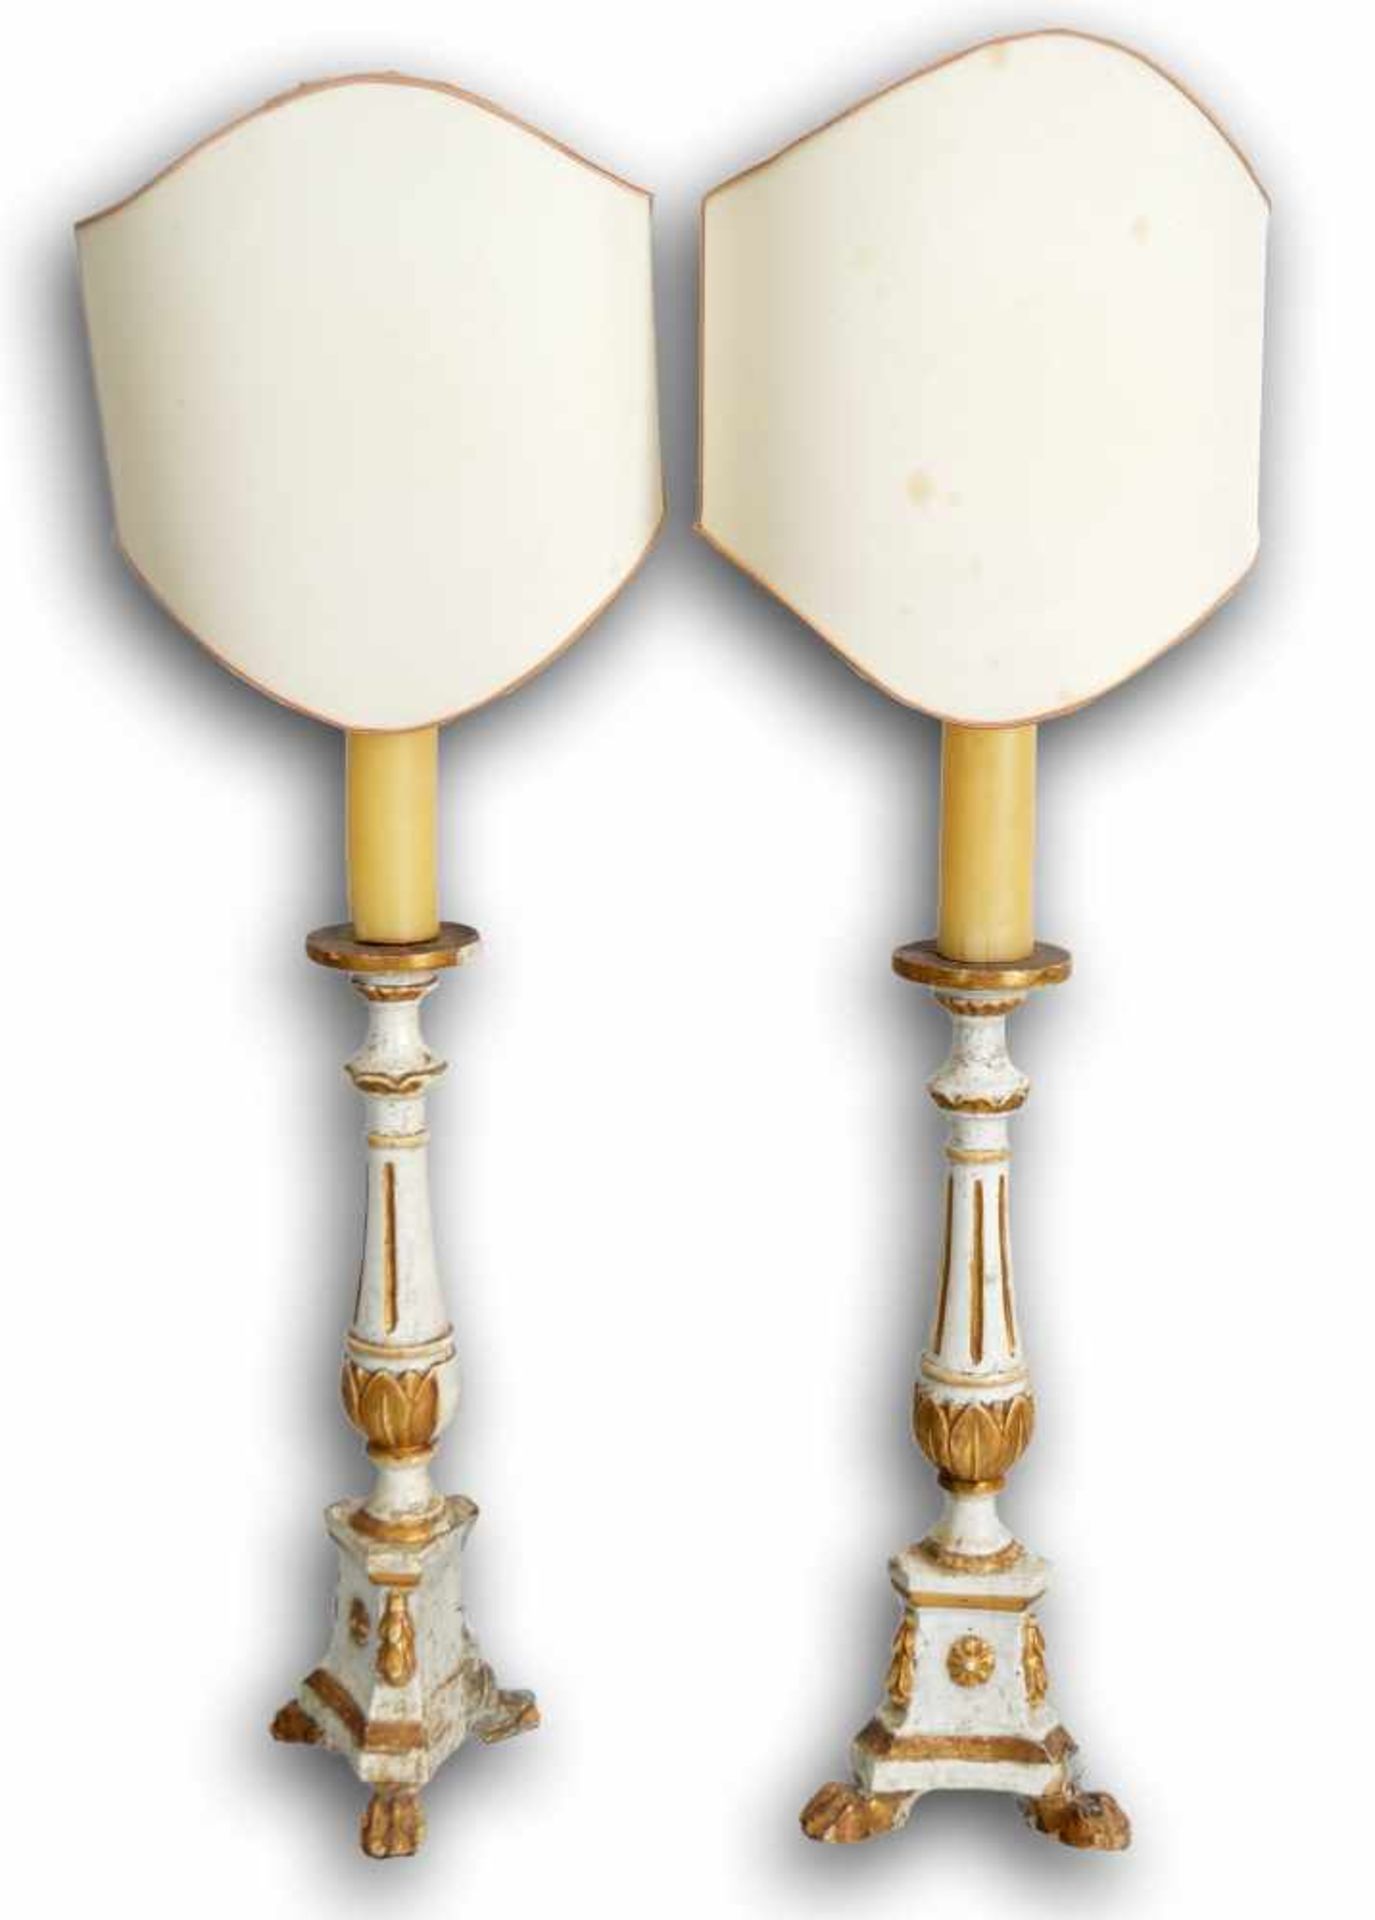 Paar Tischlampen1-lichtig, Fuß Hartholz, auf Tatzenfüßen stehend, gold und weiß gefasst,